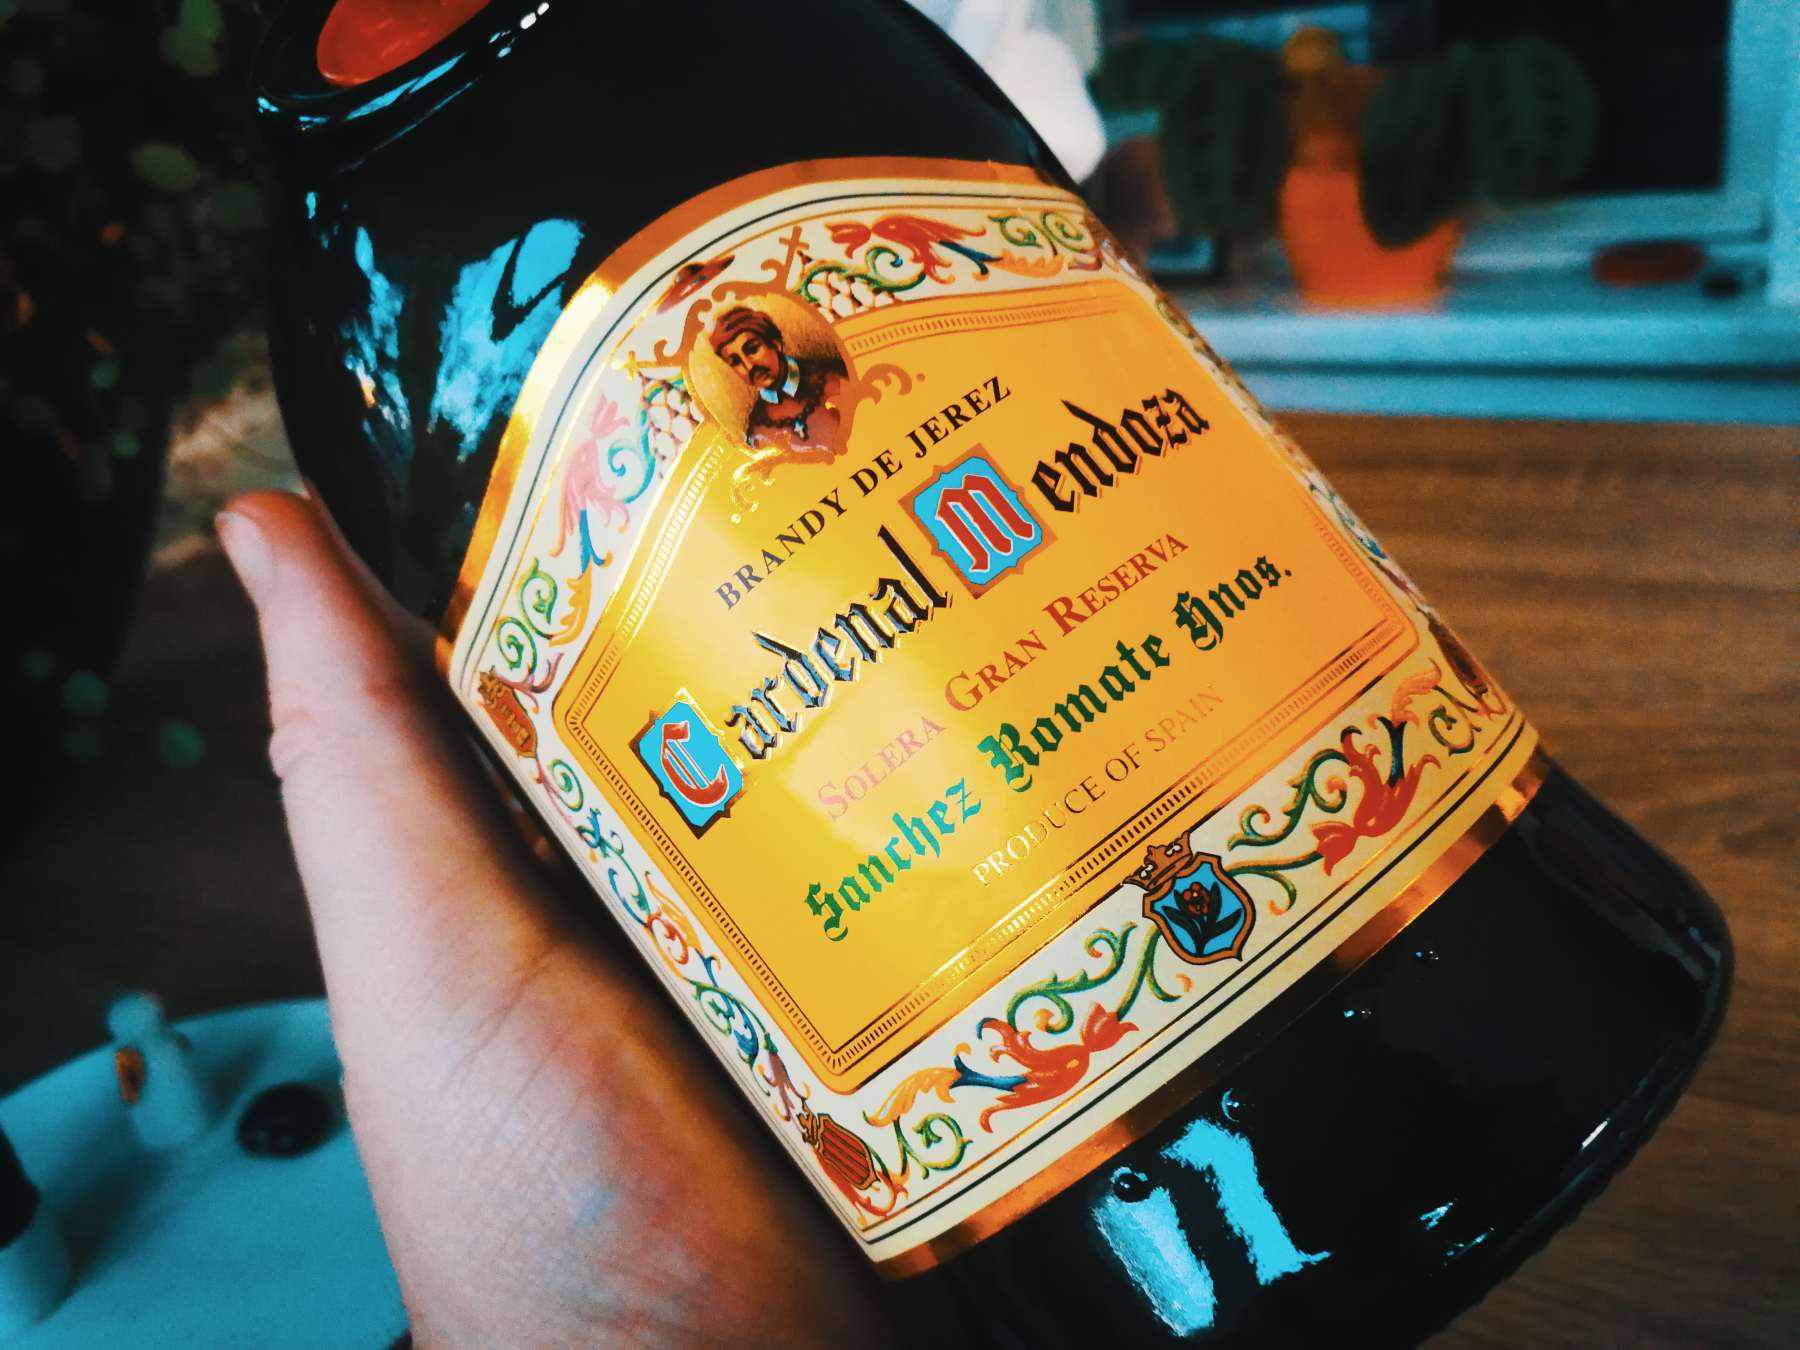 Brandy de Jerez Cardenal Mendoza Solera Gran Reserva Über 200 Jahre Erfahrung in einer Flasche